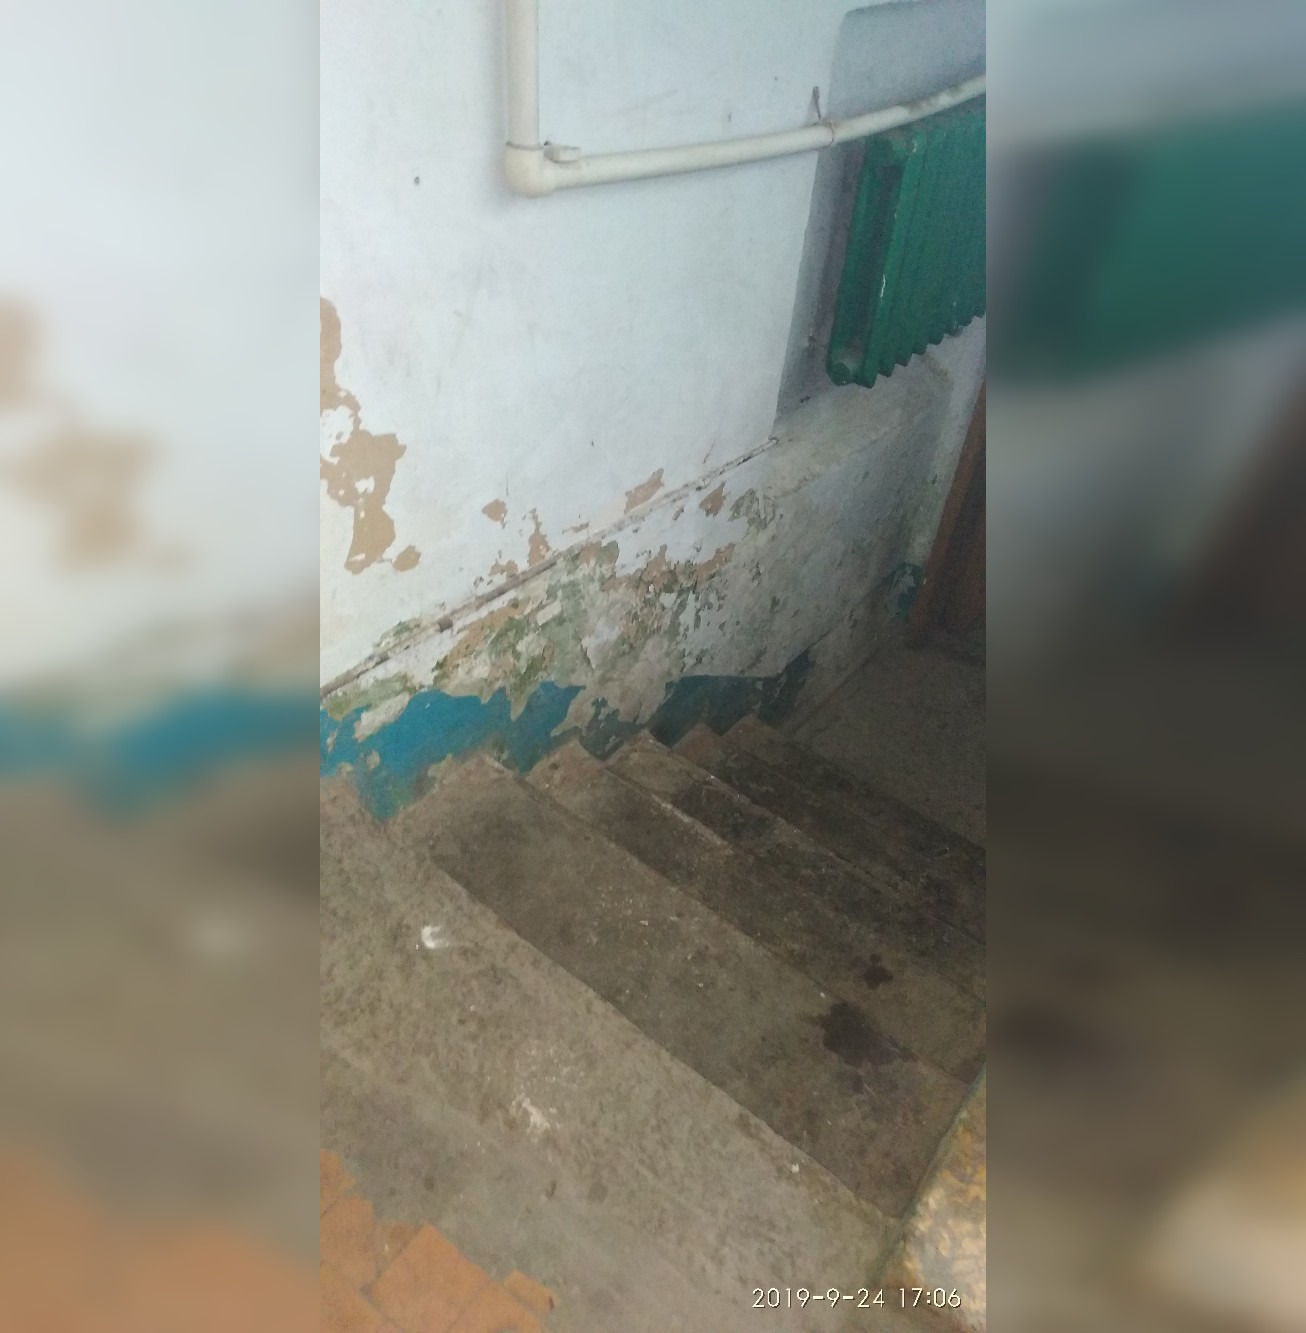 «Устали жить в таких условиях»: Жители Башкирии вынуждены жить в аварийном доме 